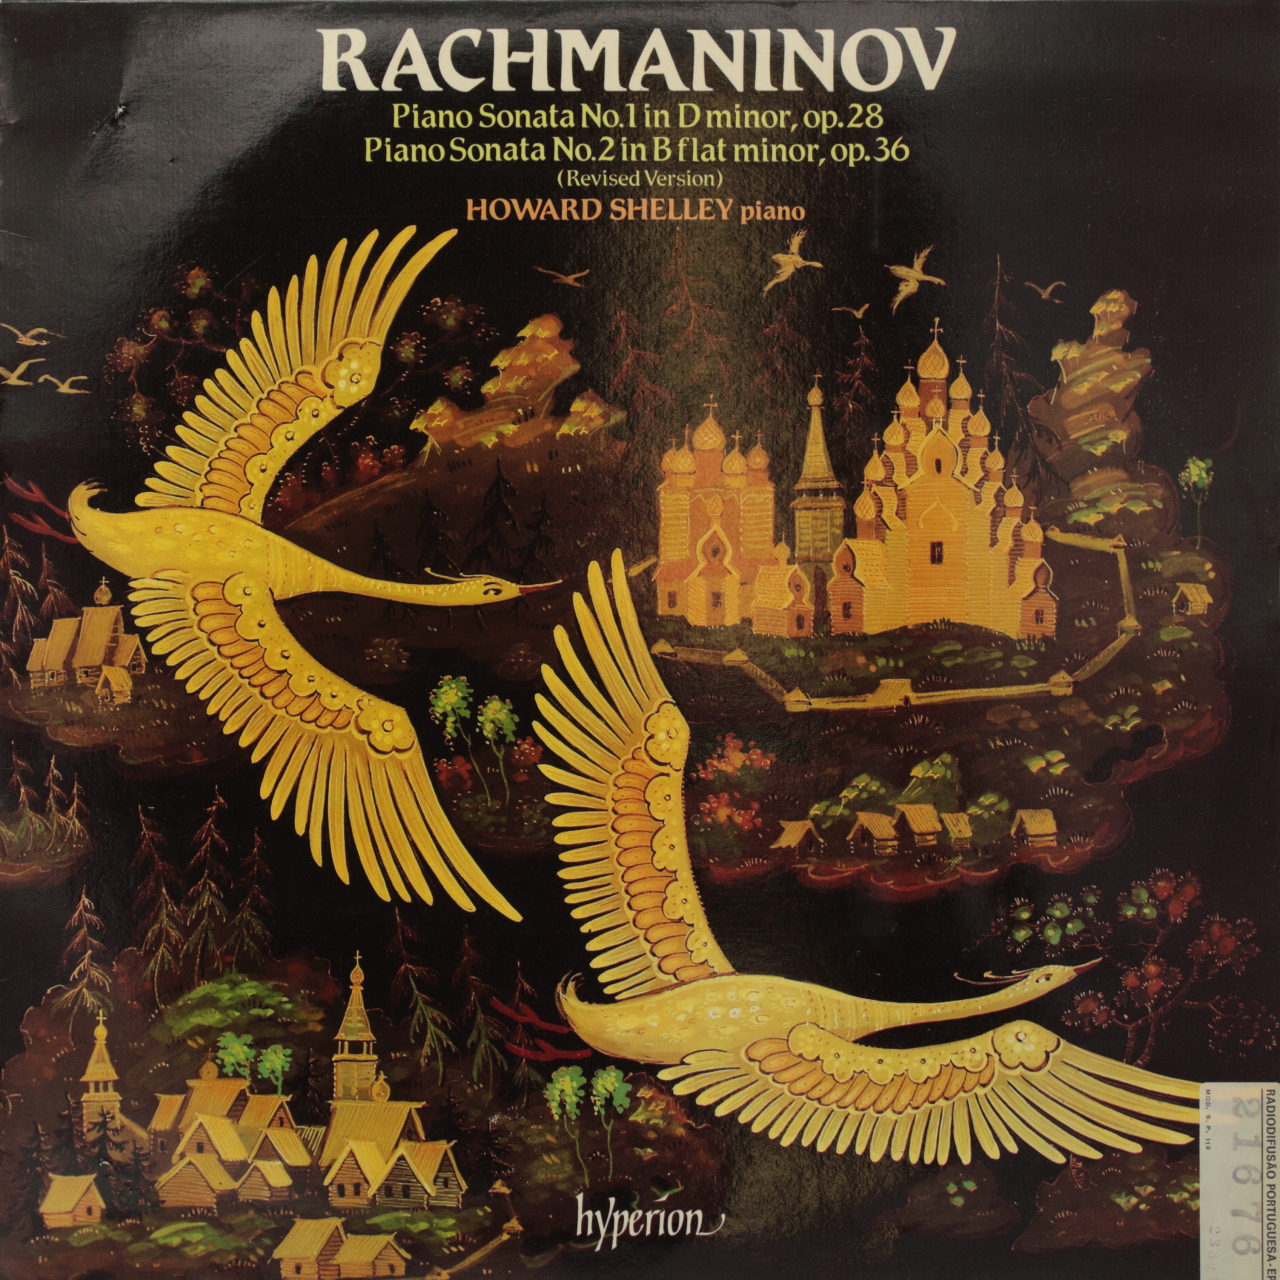 Rachmaninoff: Piano Sonata No. 1 in D minor, op. 28; Piano Sonata No. 2 in B flat minor, op. 36